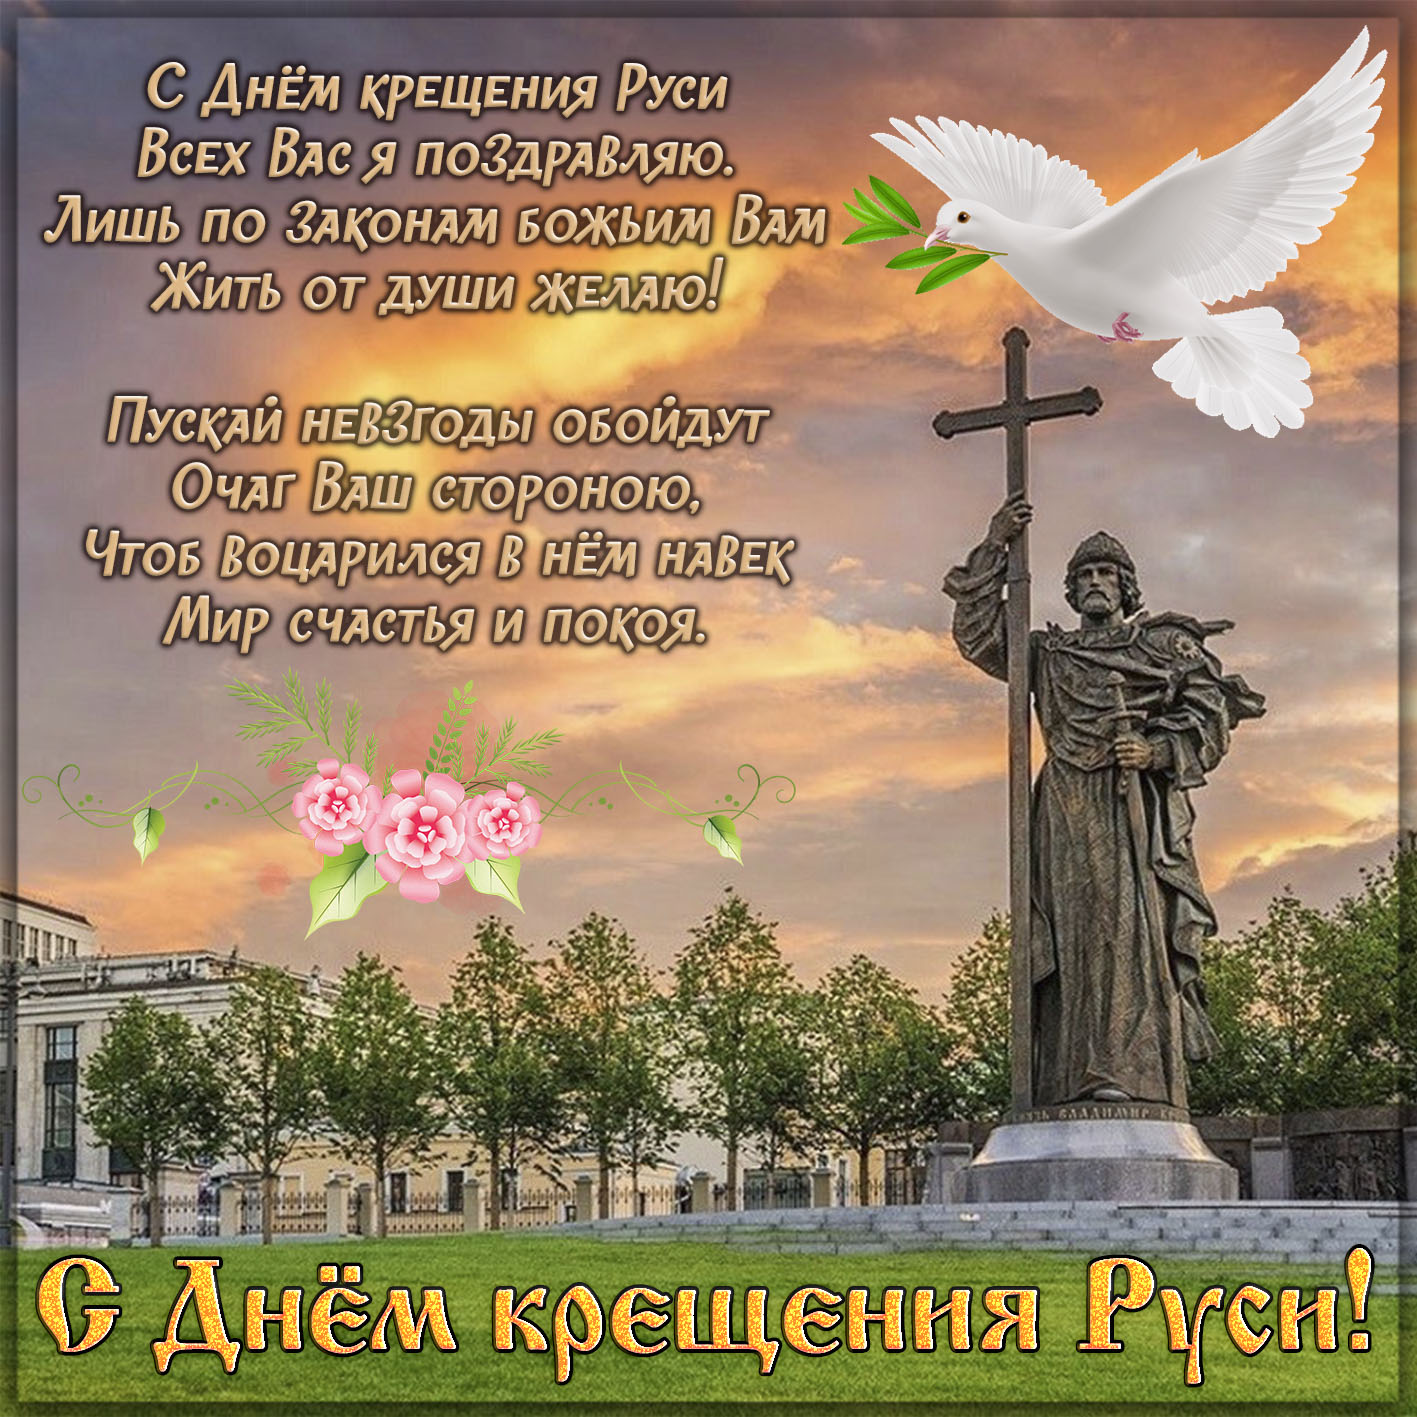 Памятник князю Владимиру к Дню крещения Руси.